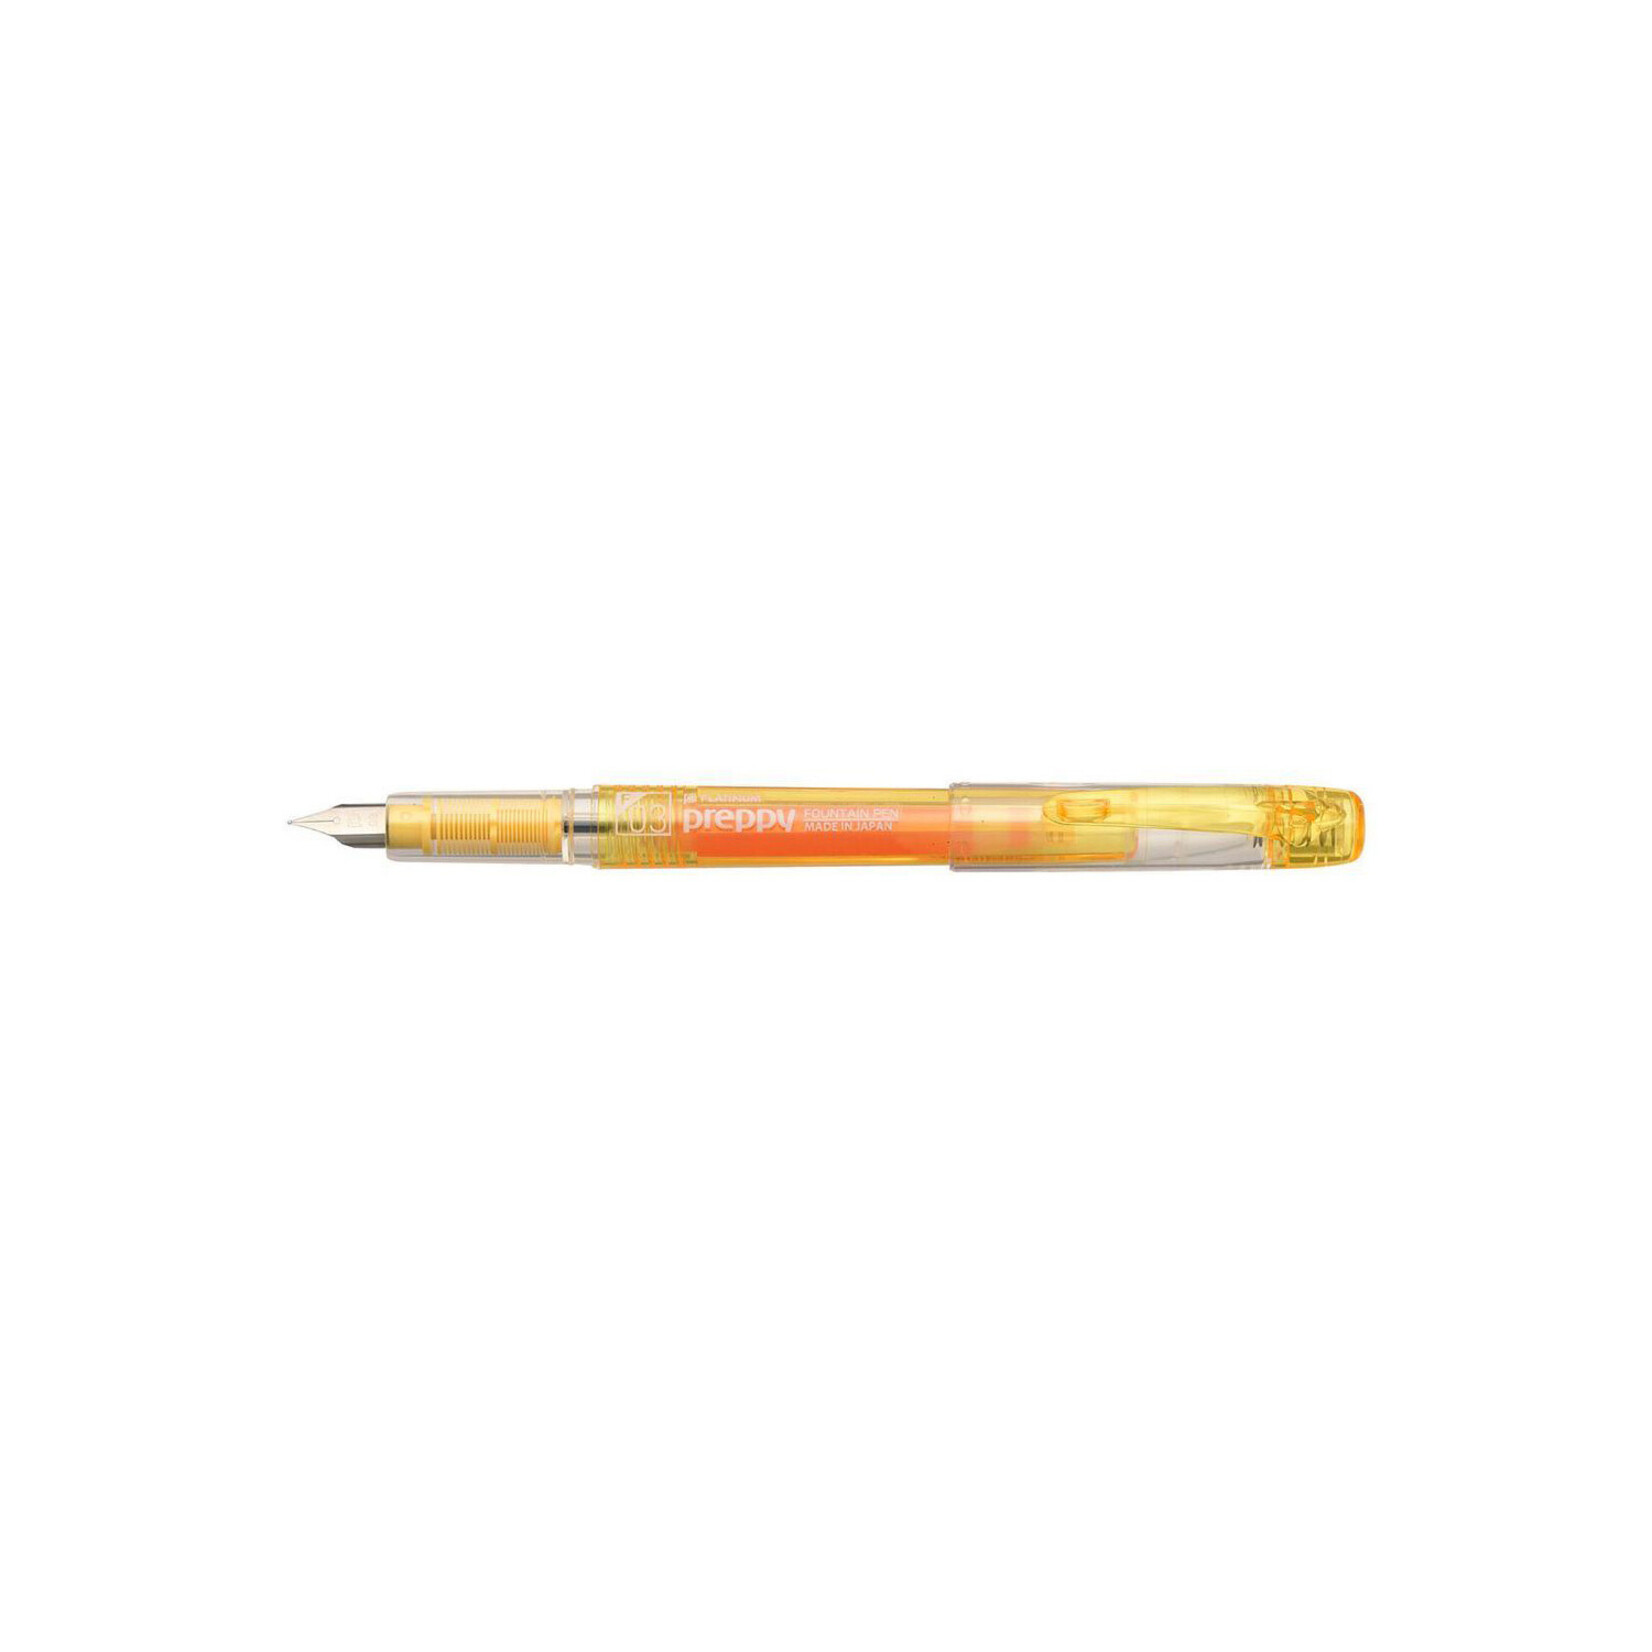 Preppy Fountain Pen, 03 Fine, Yellow